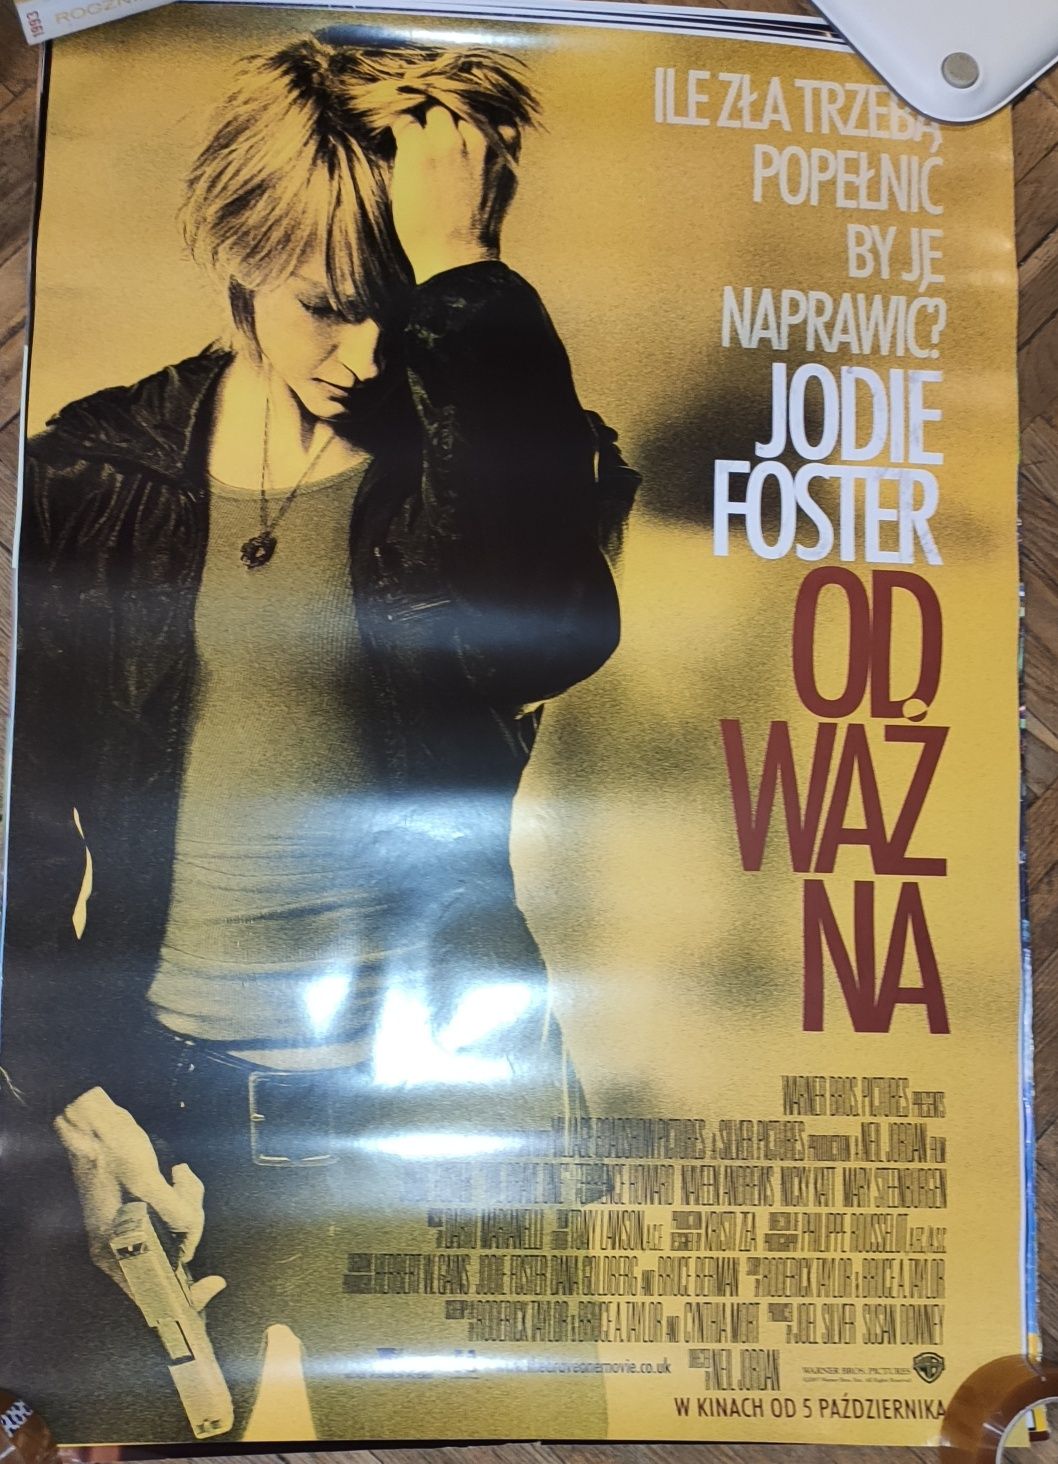 Odważna plakat filmowy oryginalny Jodie Foster